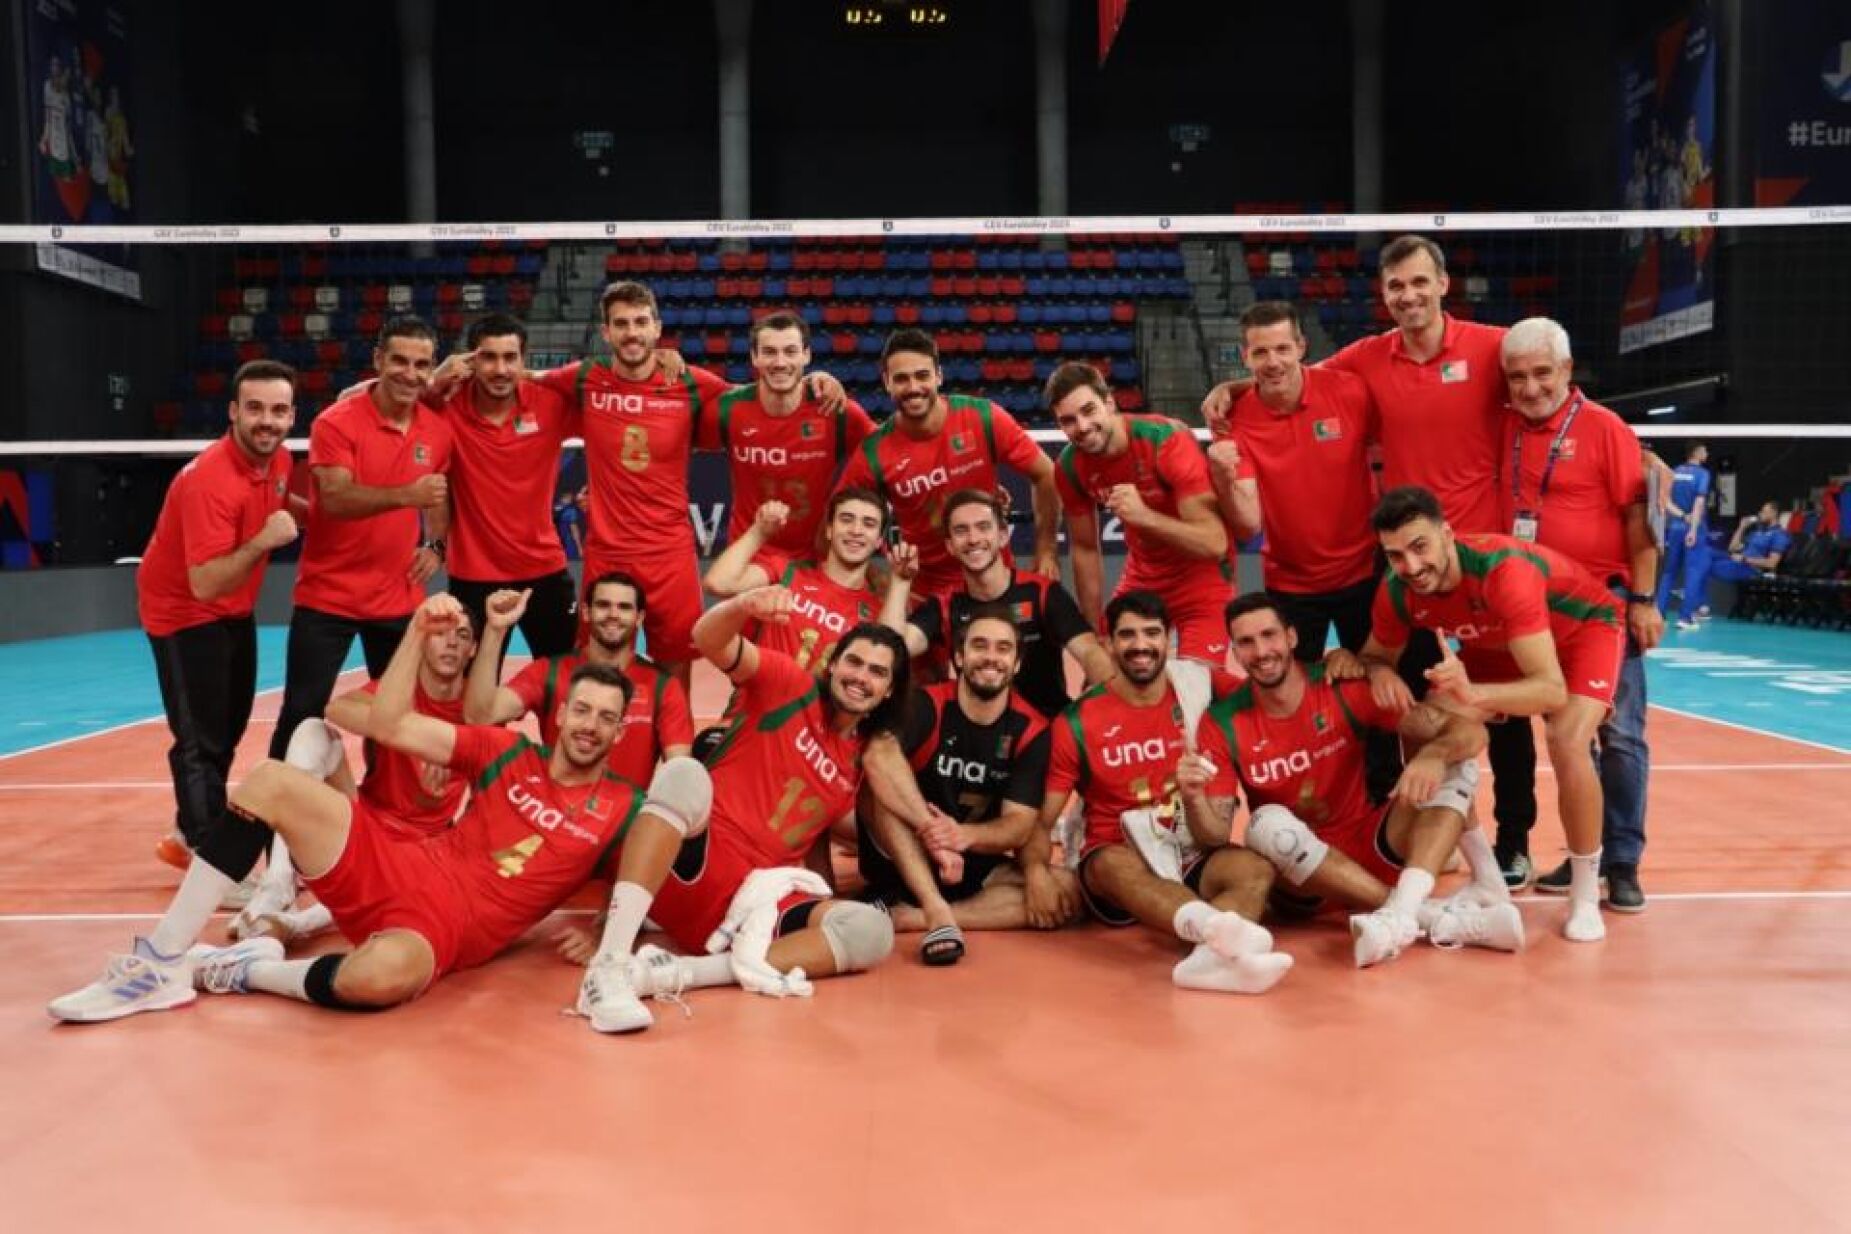 Federação Portuguesa de Voleibol - Notícias